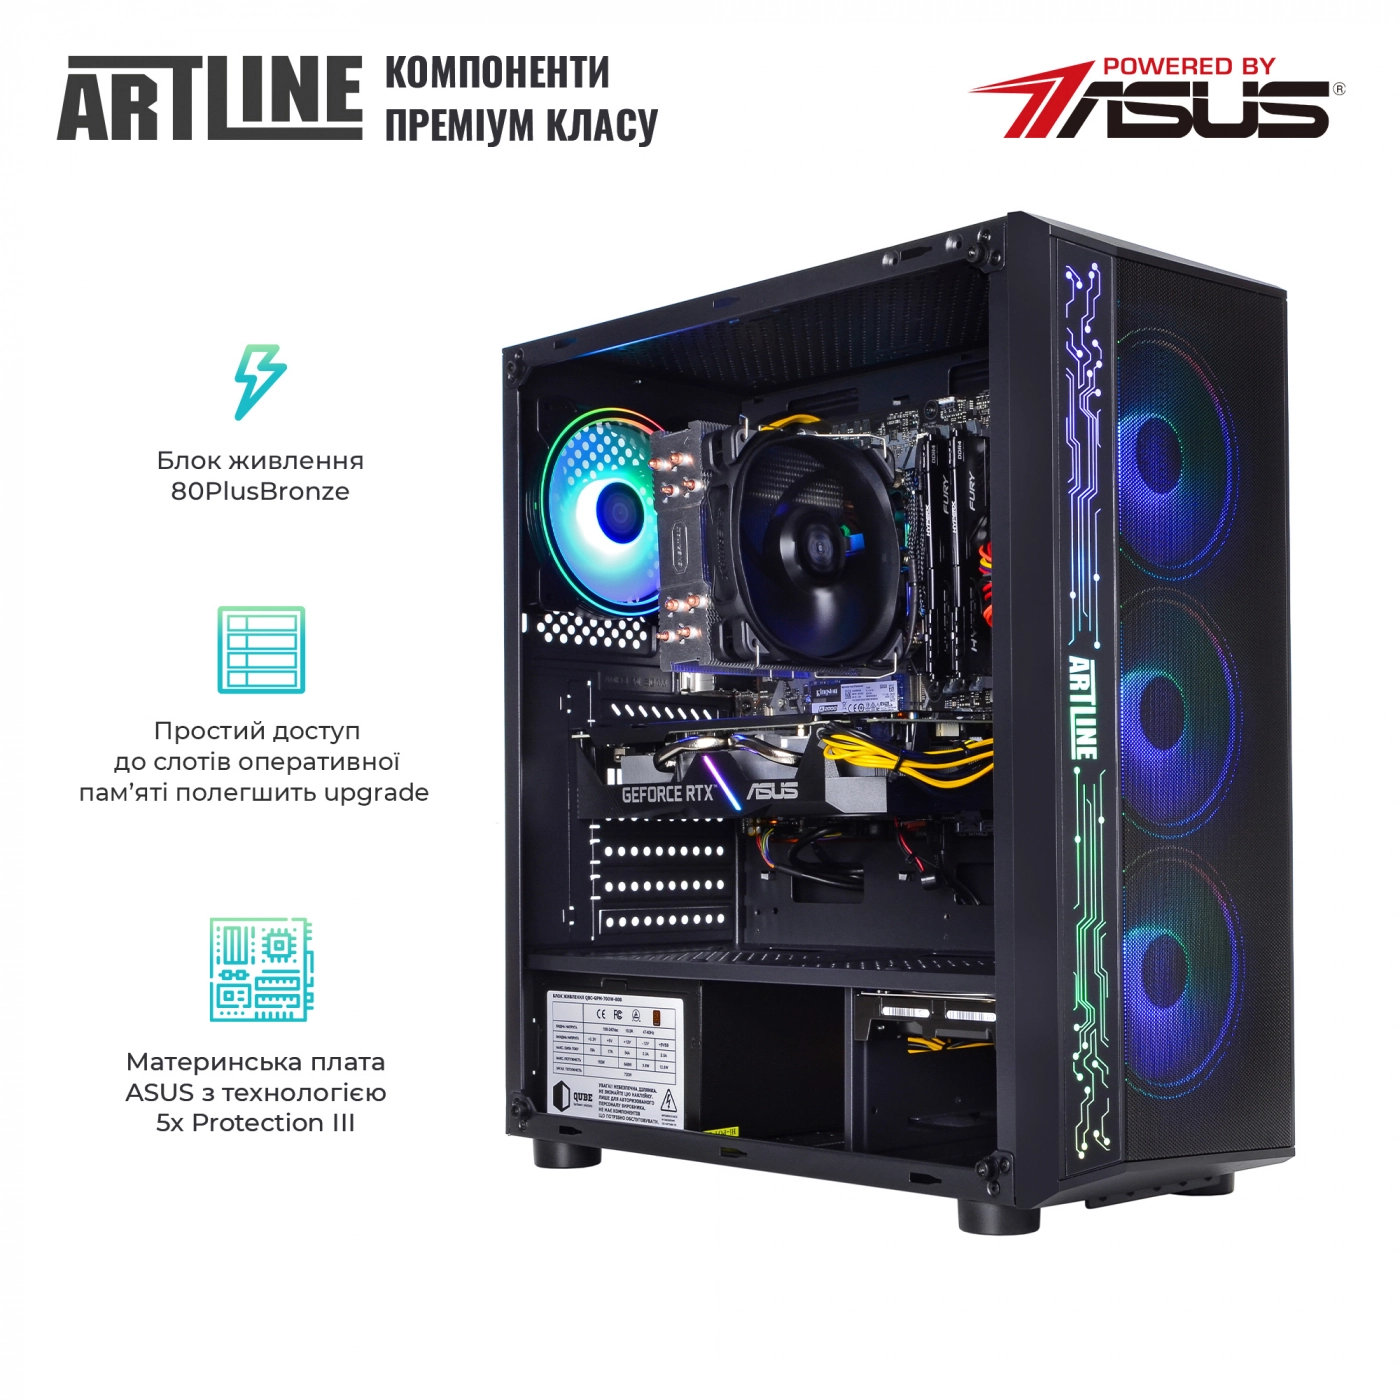 Купить Компьютер ARTLINE Gaming X65v34 - фото 2